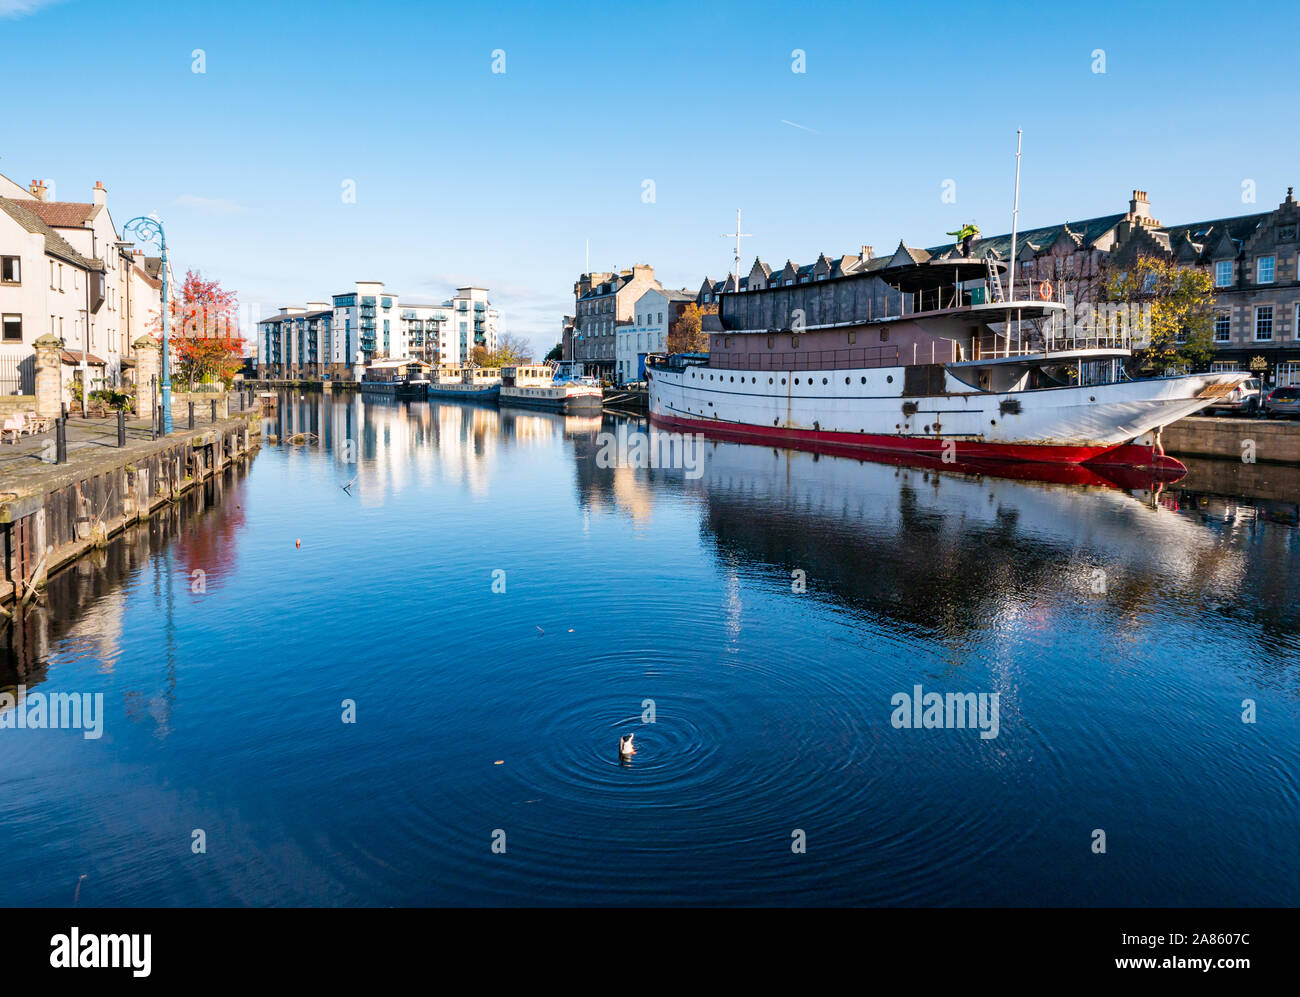 Réflexions dans l'eau de rivière Leith avec conversion d'Ocean Mist de bateau, la rive, Leith, Edinburgh, Ecosse, Royaume-Uni Banque D'Images